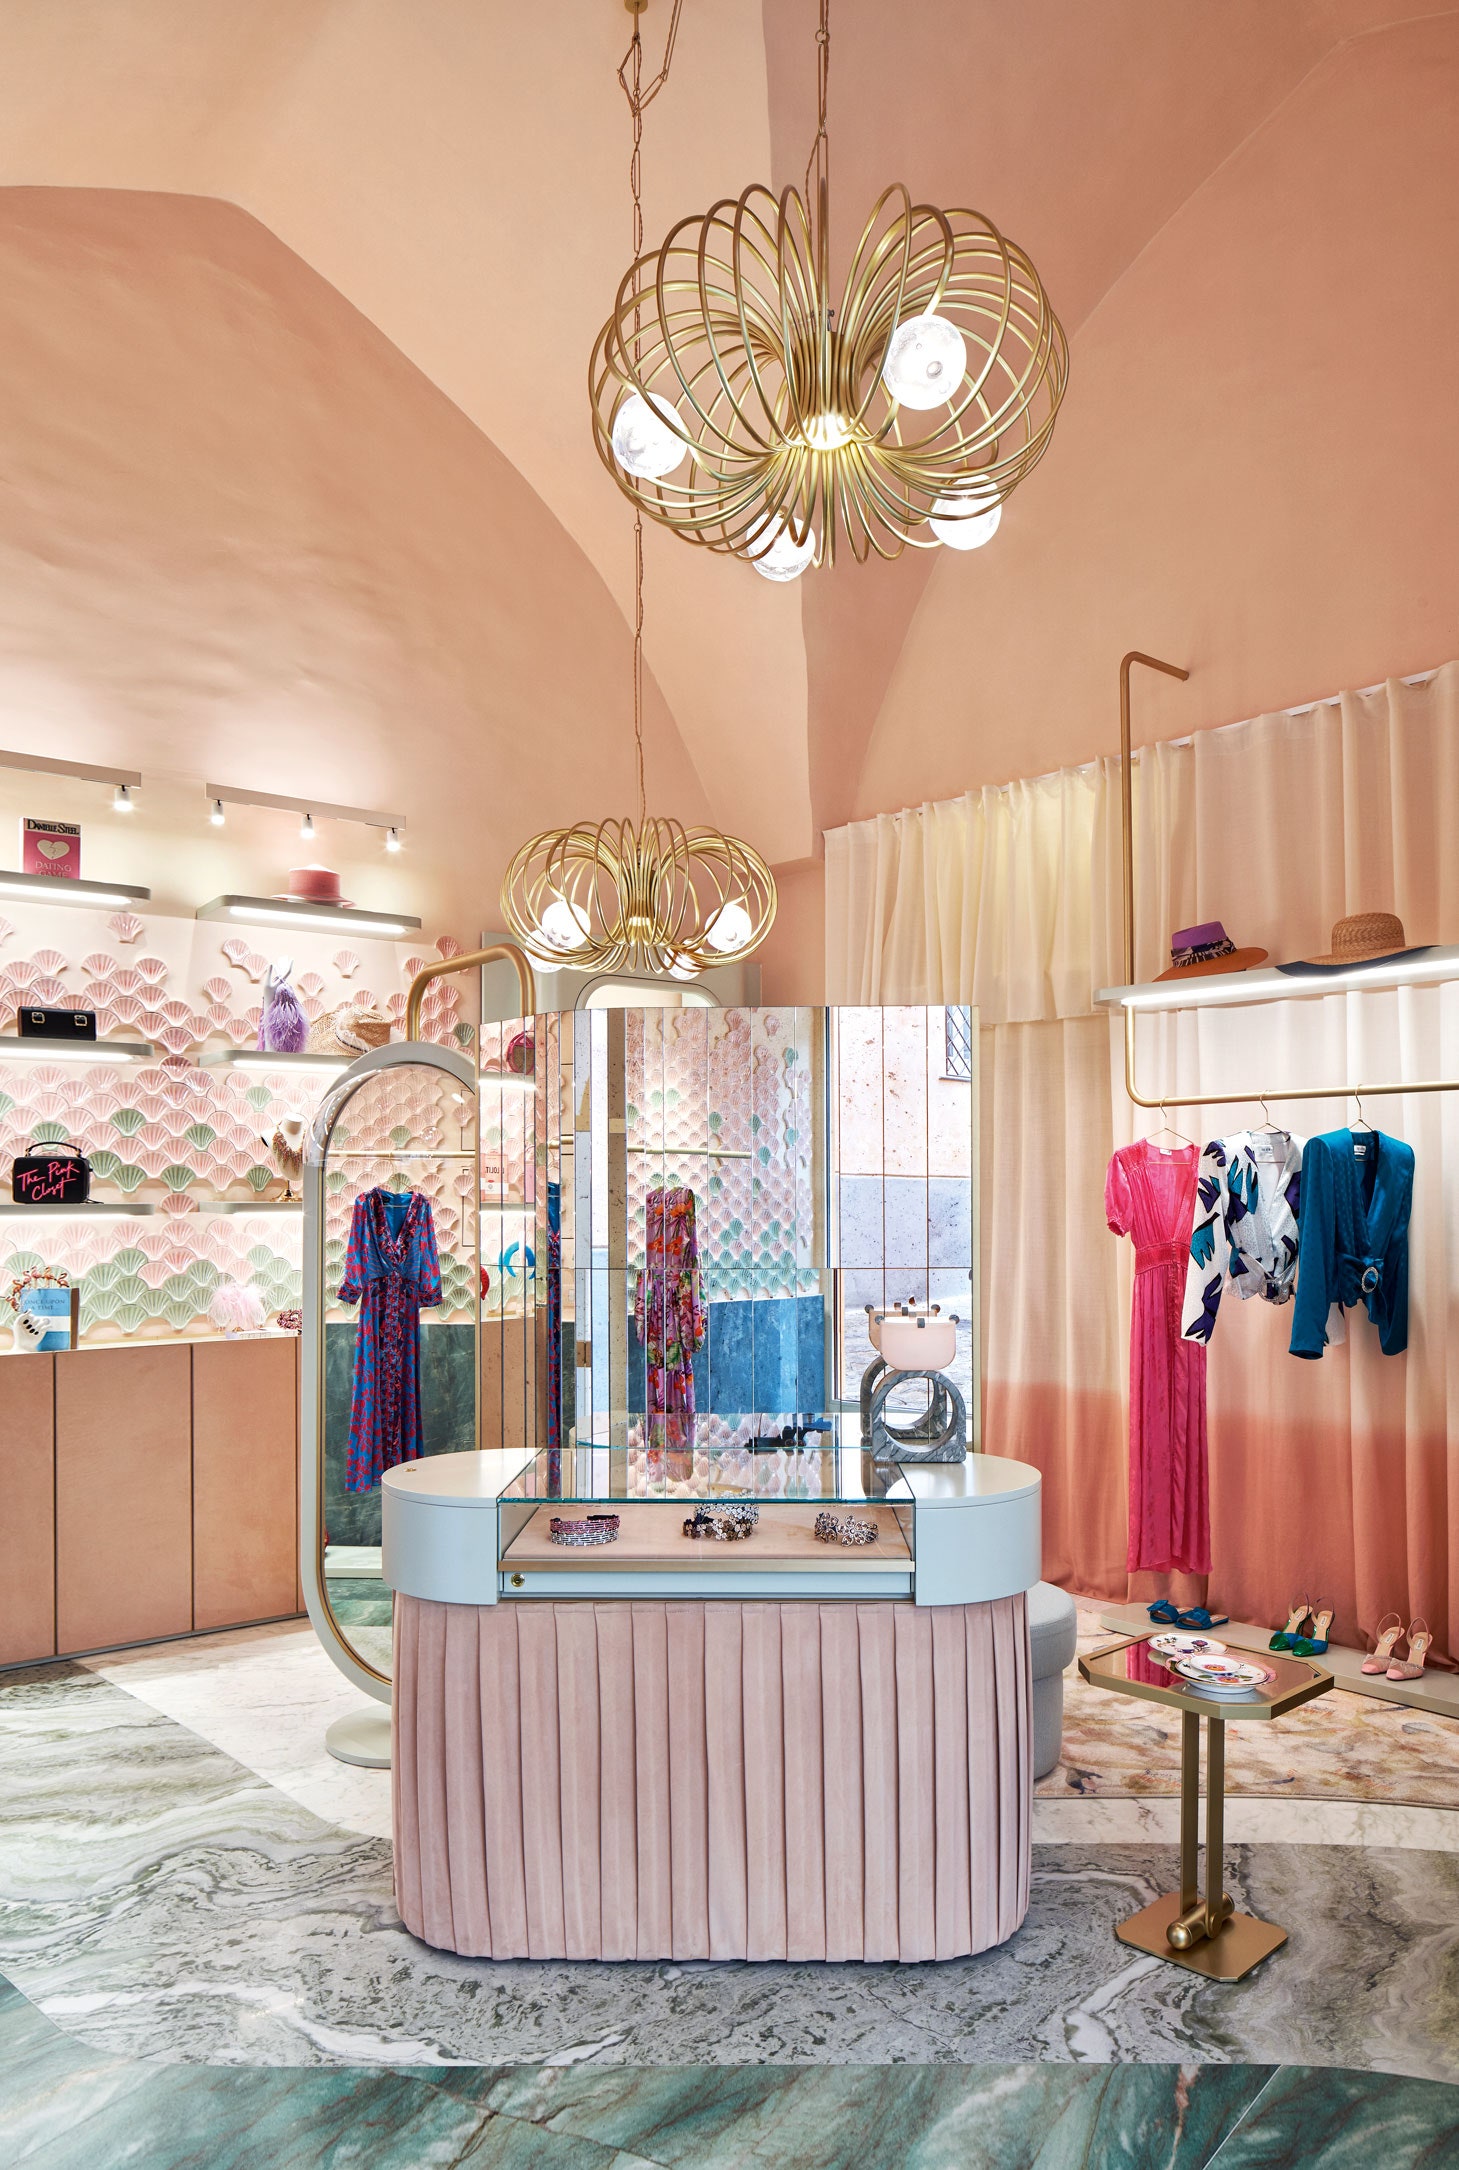 Кристина Челестино стала дизайнером бутика The Pink Closet относящегося к пятизвездочному отелю Palazzo Avino. Мебель...